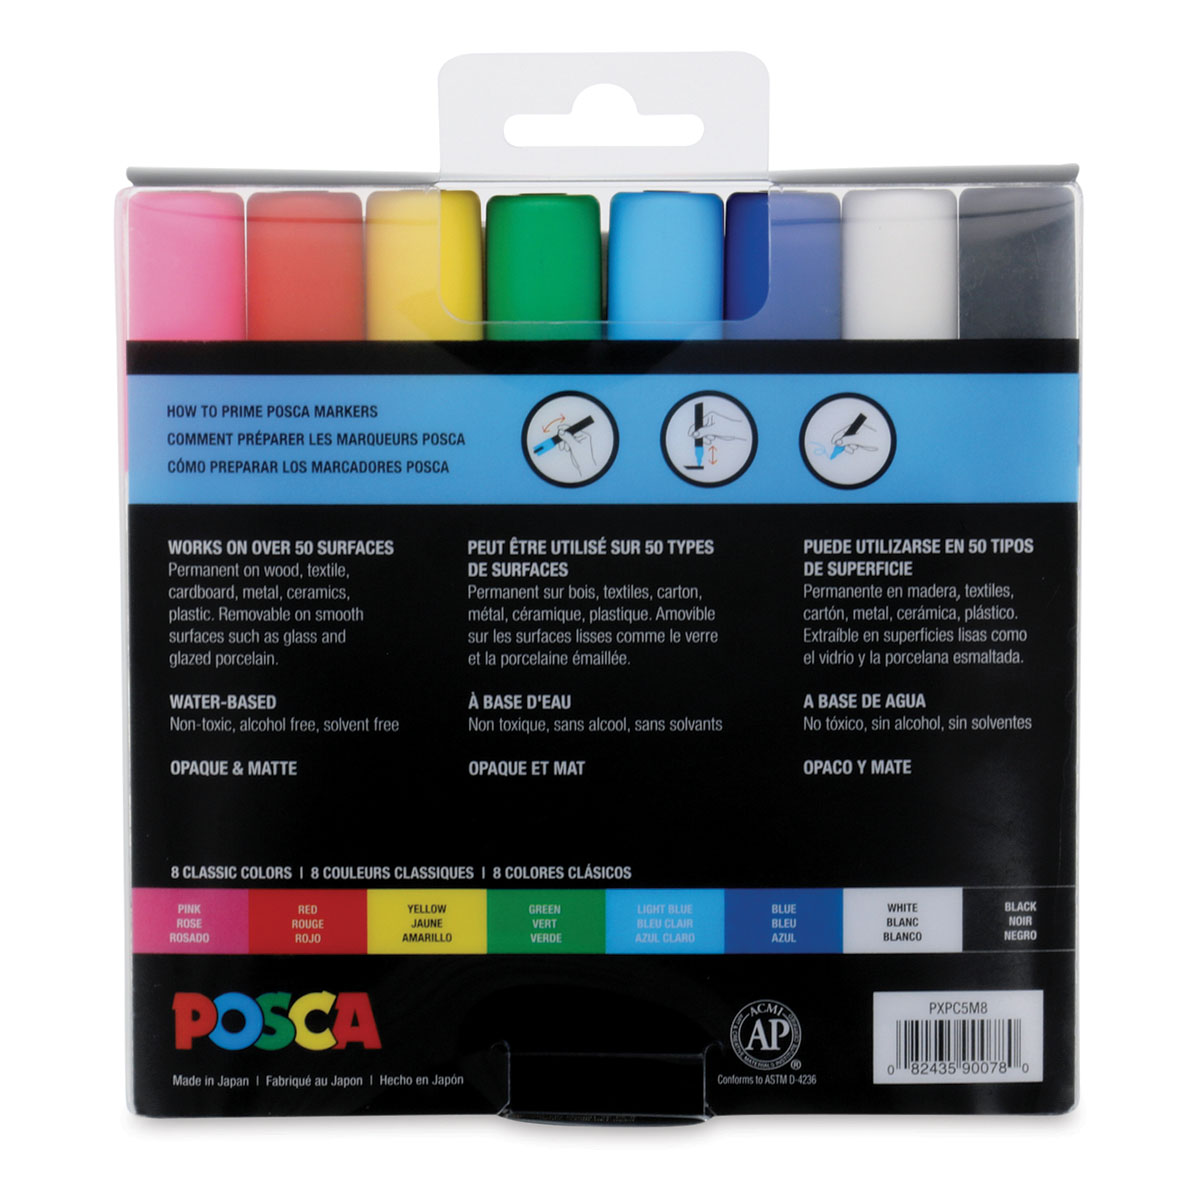 Uni Posca Paint Markers, Medium - Standard (set of 8) – Ink & Lead